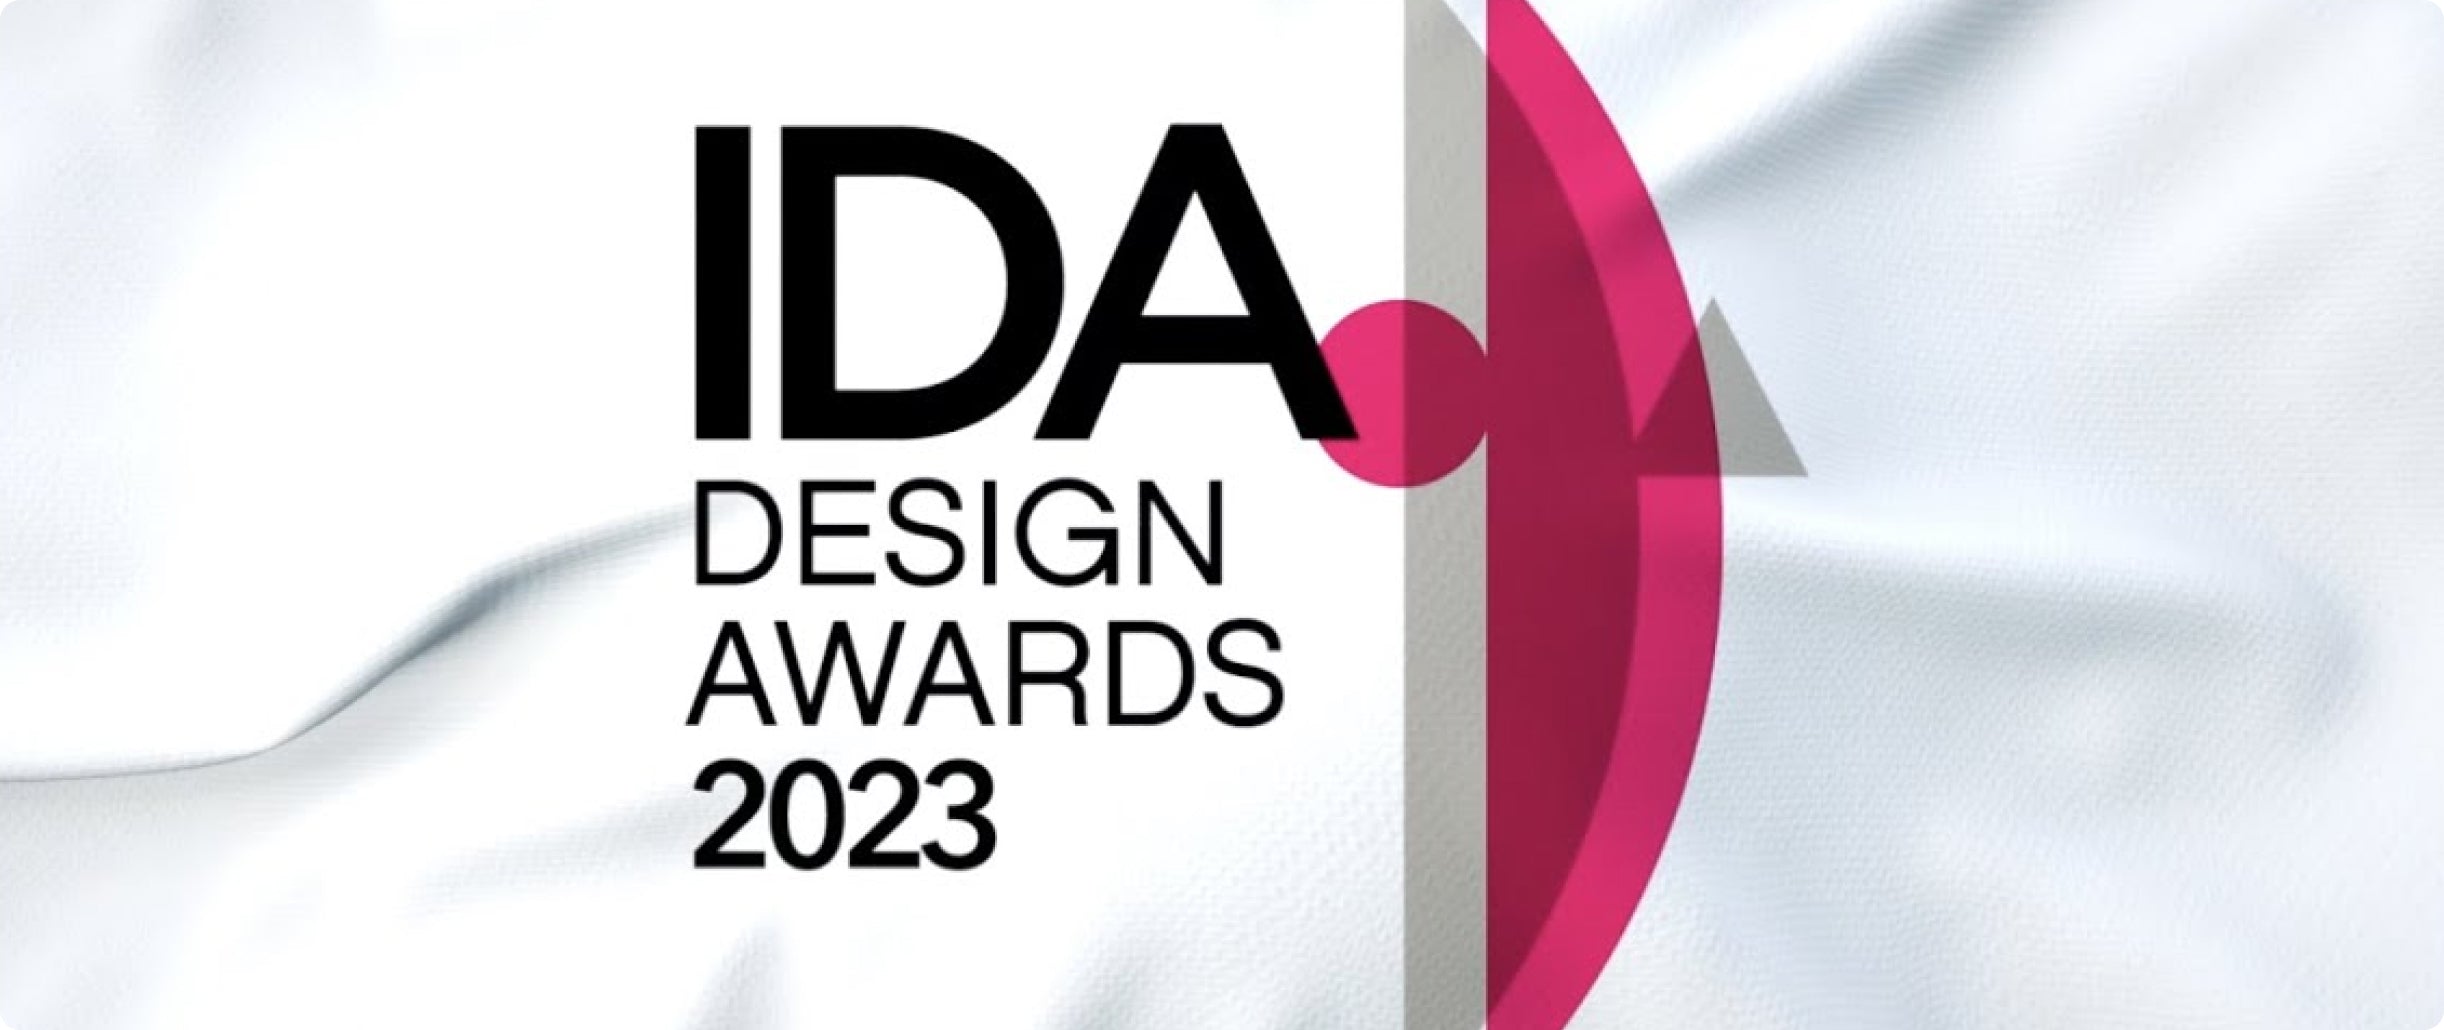 Terra Kaffe | "IDA Design Awards 2023"